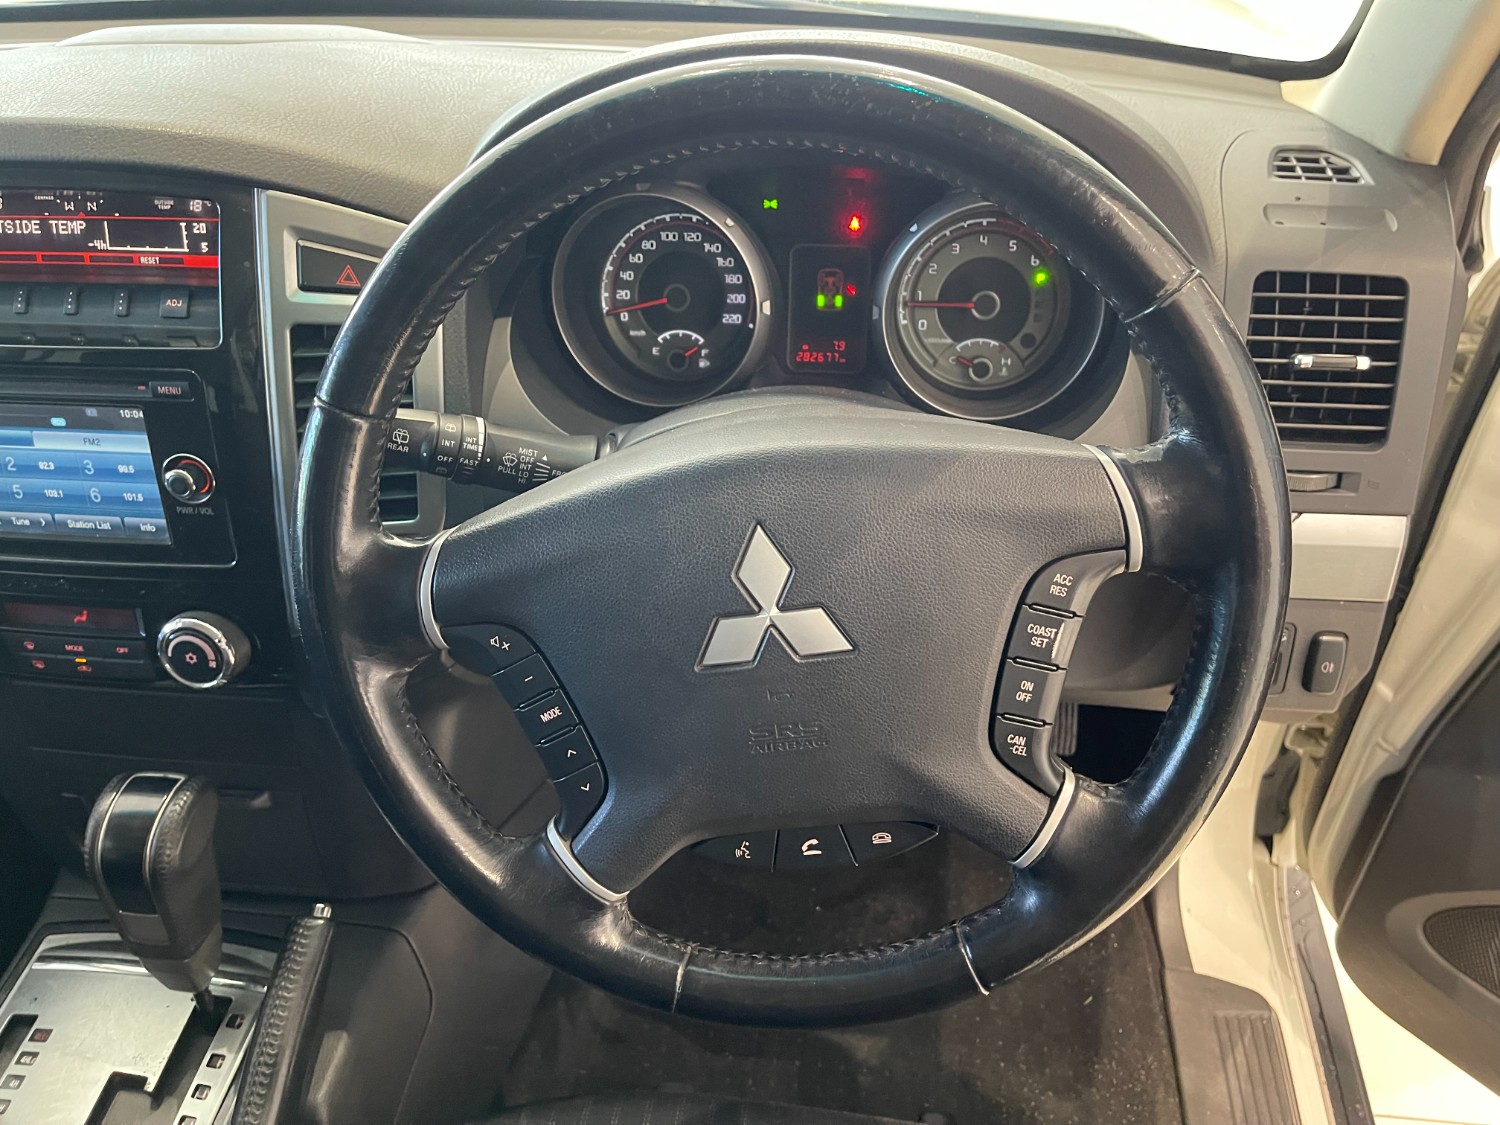 2014 Mitsubishi Pajero NW Turbo GLX Wagon Image 6